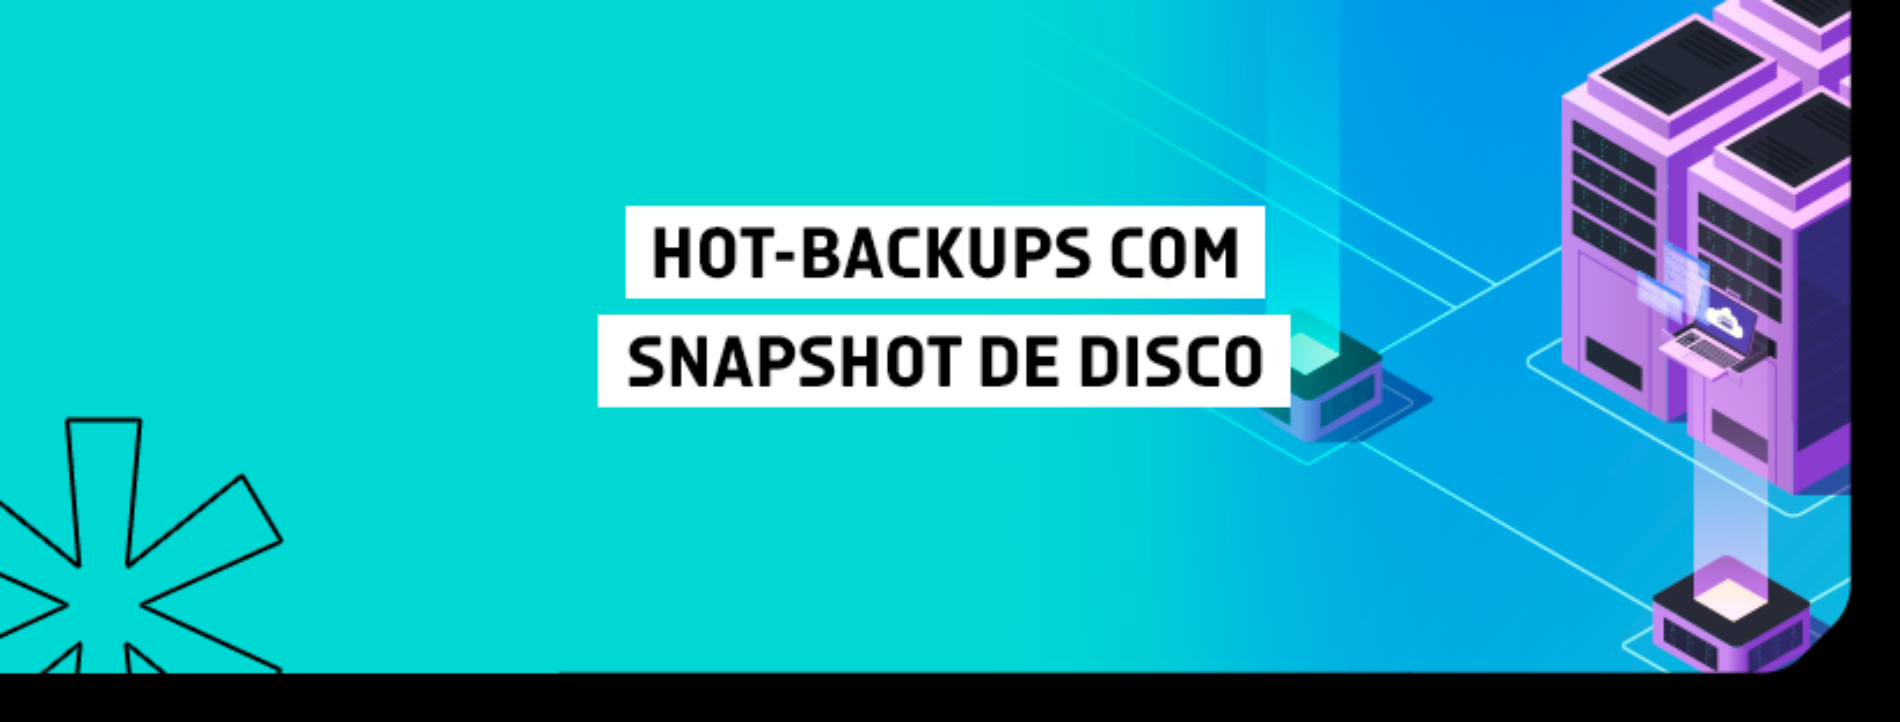 Hot-backups com snapshot de disco